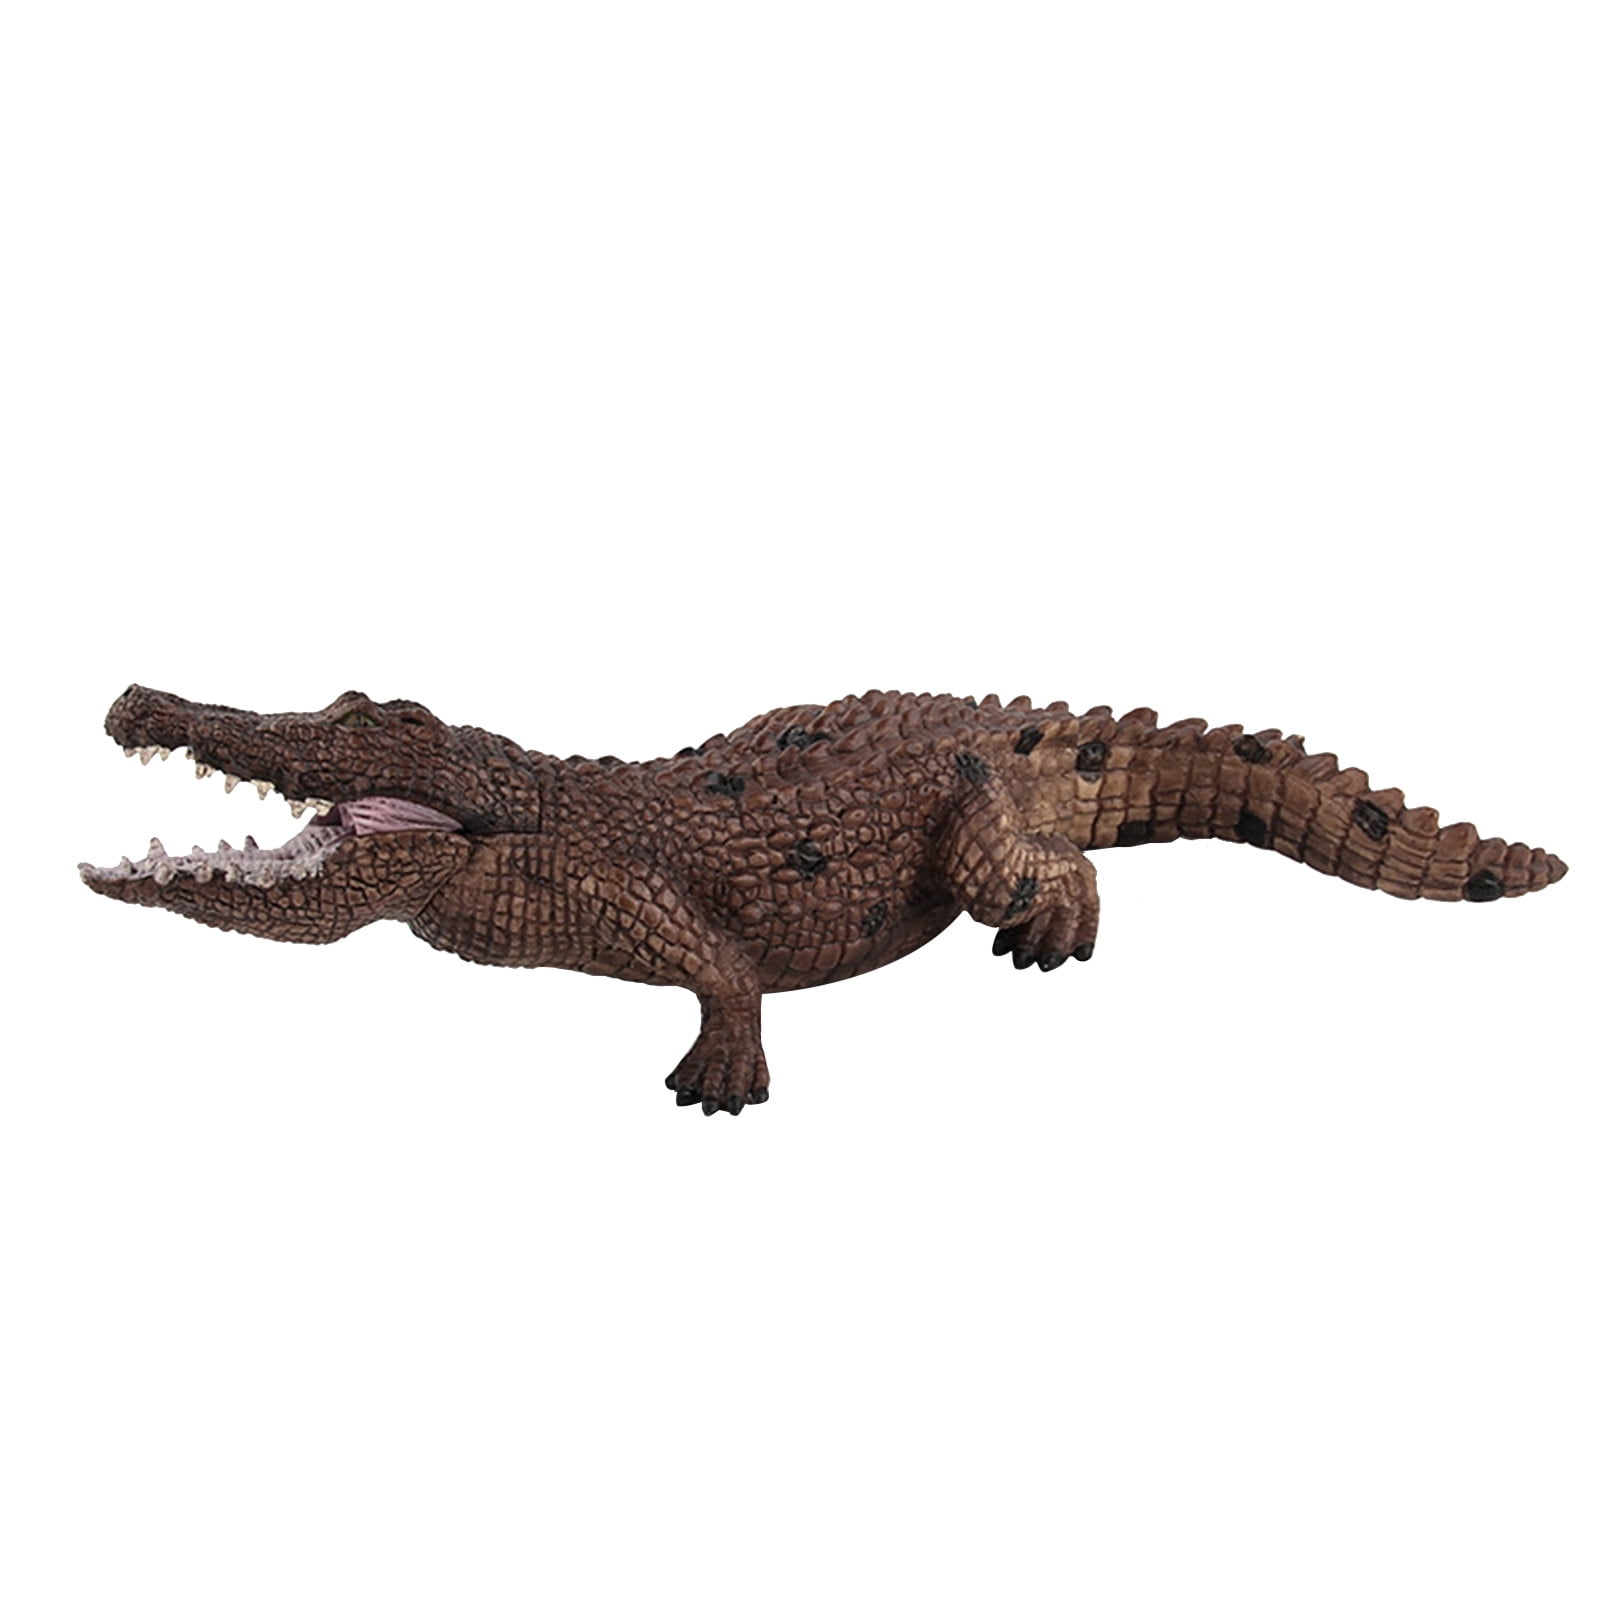 Crocodile Animal Model Realistic Alligator Plastic Toy Solid Figurine Display